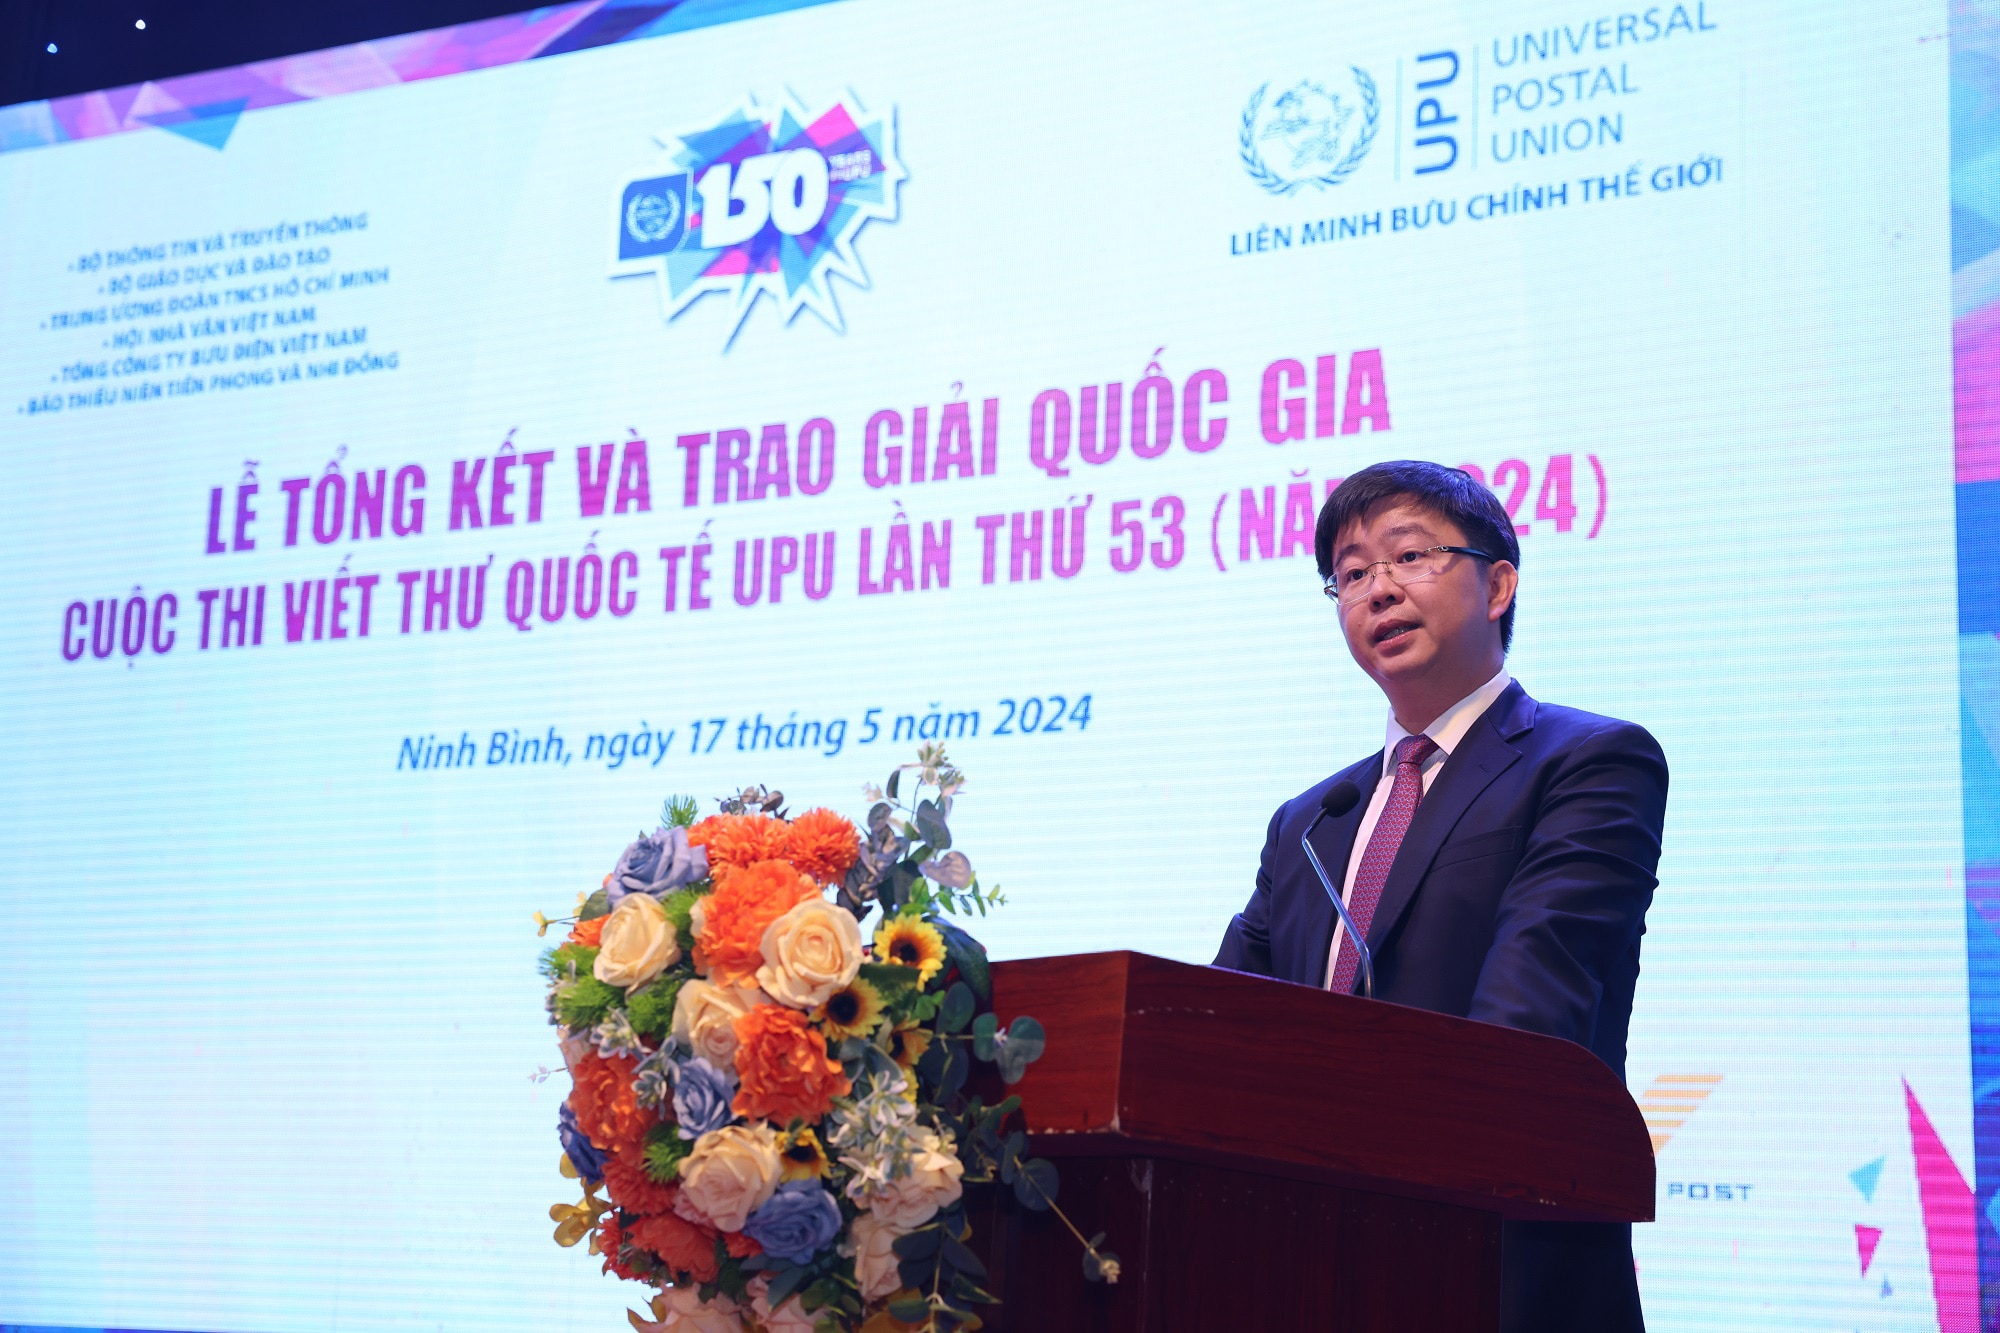 Thứ trưởng Bộ Thông tin và Truyền thông, trưởng Ban tổ chức cuộc thi - Bùi Hoàng Phương phát biểu khai mạc lễ trao giải cuộc thi viết thư quốc tế UPU - Ảnh: HÀ THƯƠNG